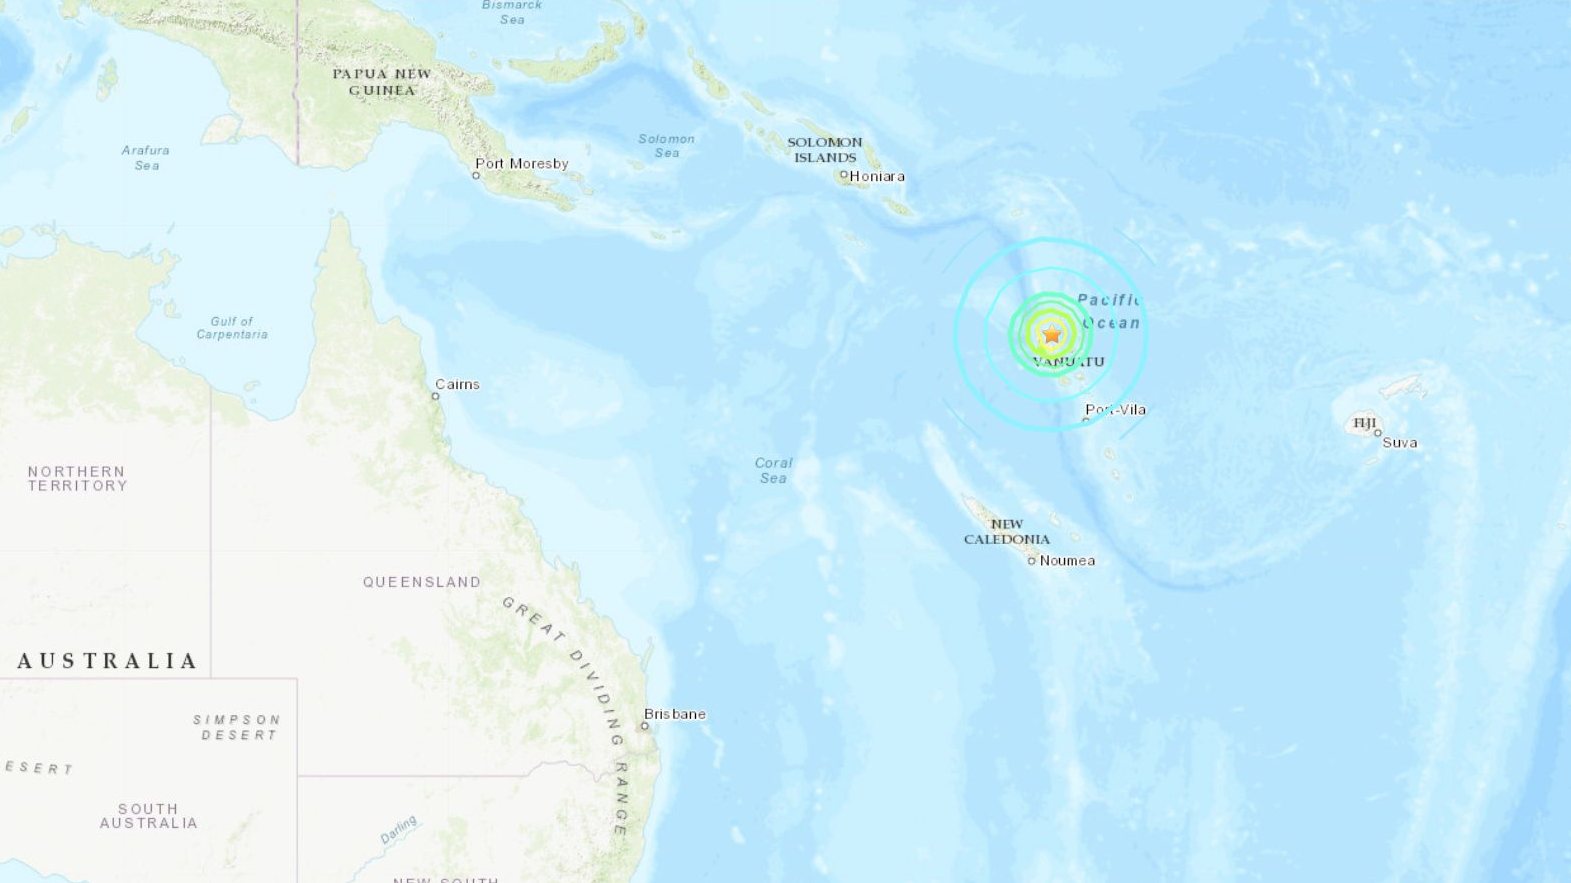 Vanuatu fica a nordeste da Austrália, próximo das ilhas Salomão, Fiji e da Nova Caledónia